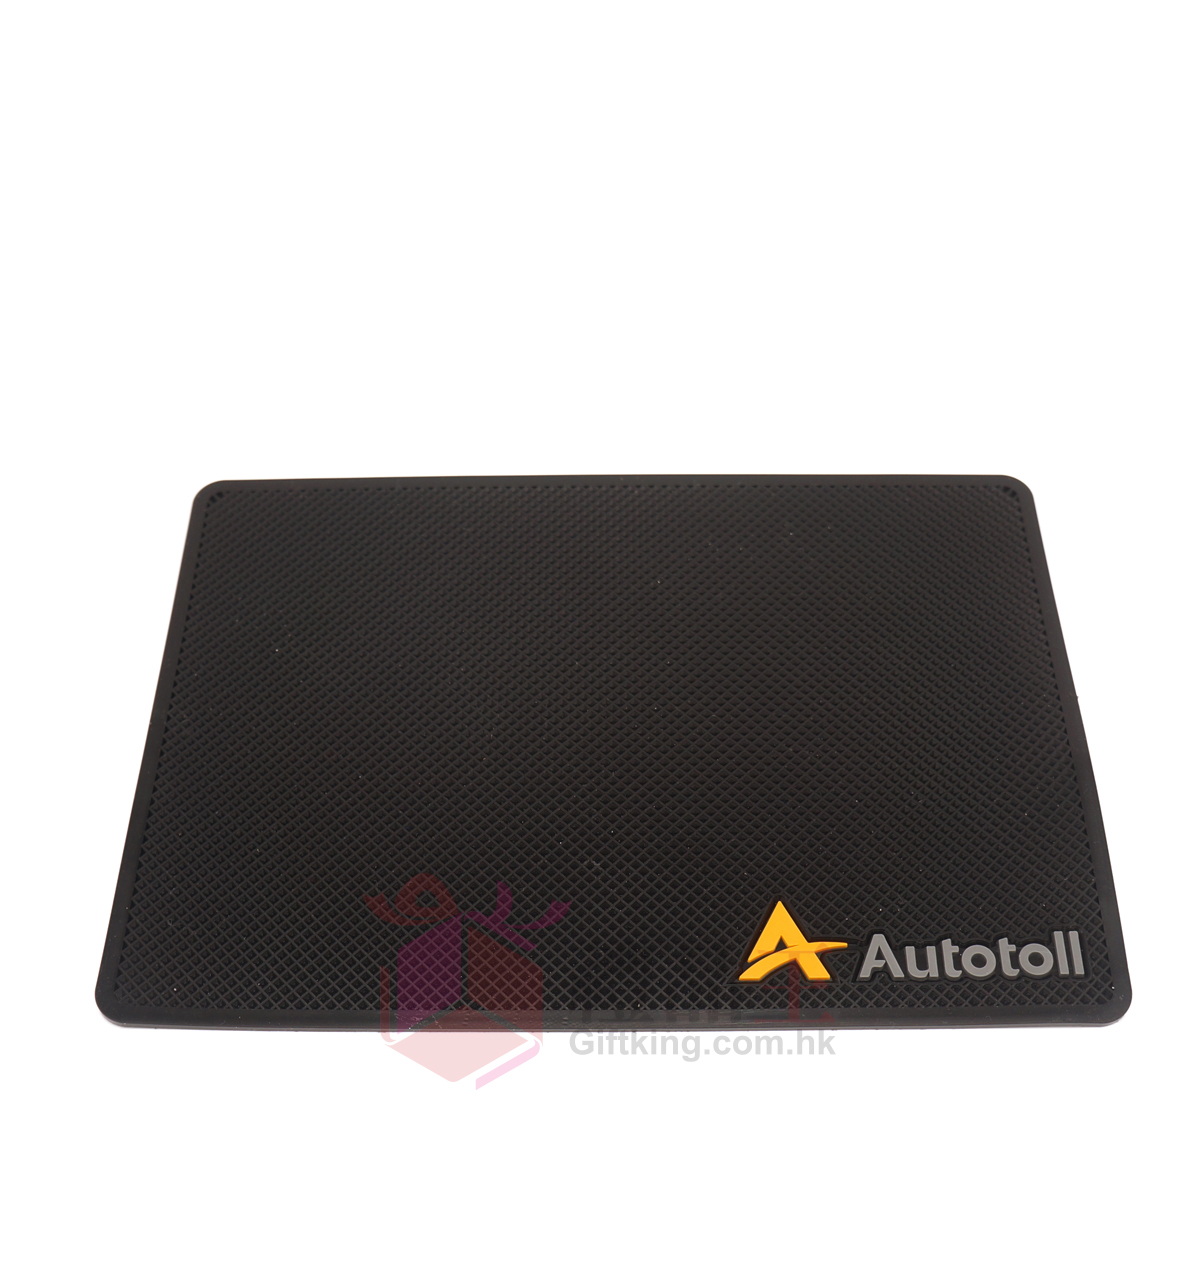 Autotoll Car phone mat (Car gift)